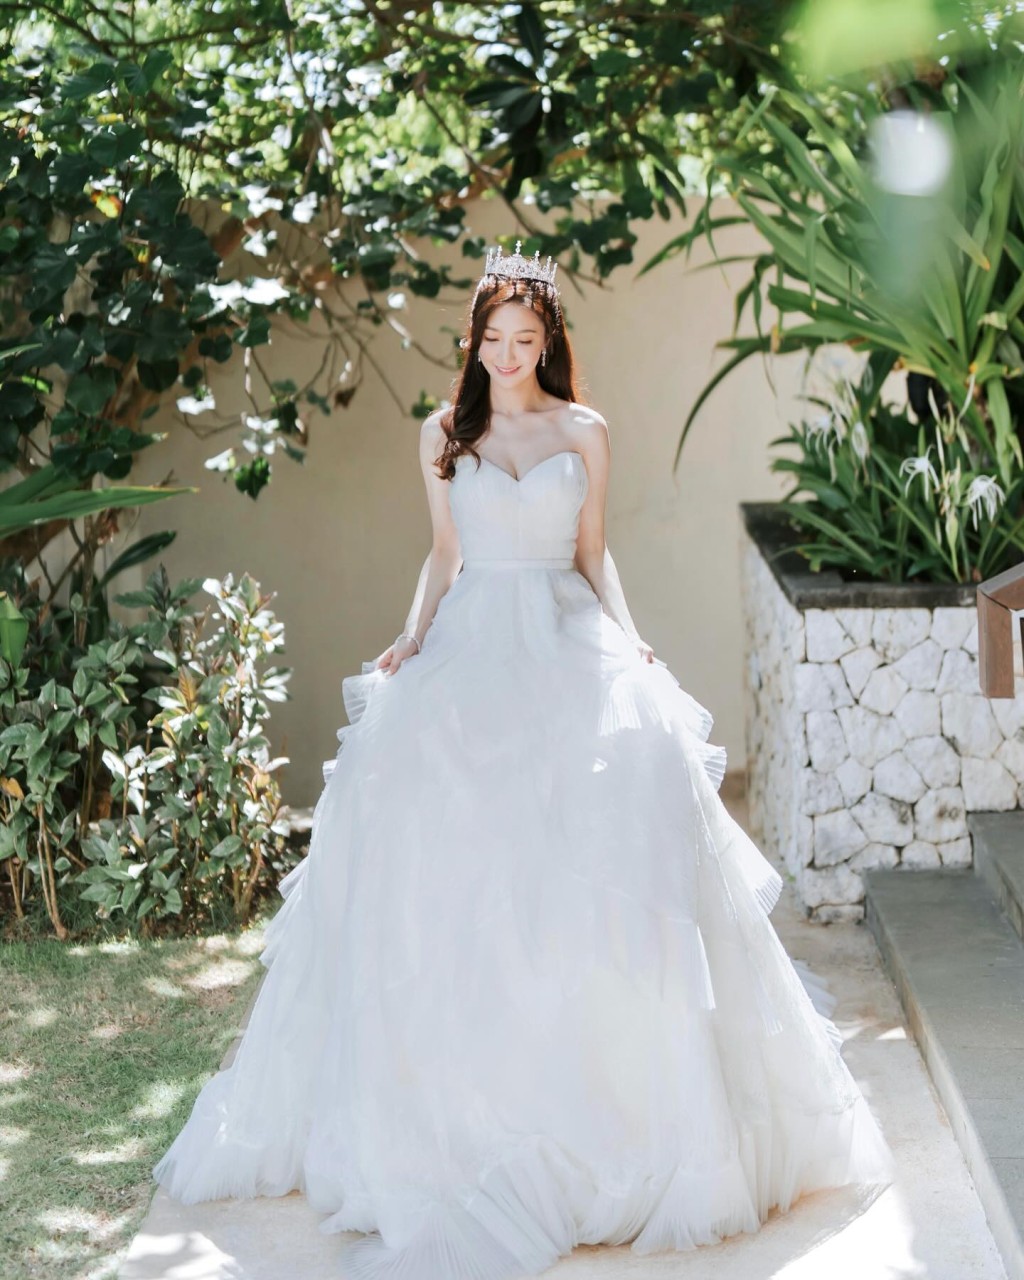 婚礼进场时，何依婷换上本地著名设计师Kev Yiu的纯白露肩婚纱，拖尾裙摆以多层法国喱士营造出浪漫轻盈感，加上闪烁皇冠造型，犹如公主般。